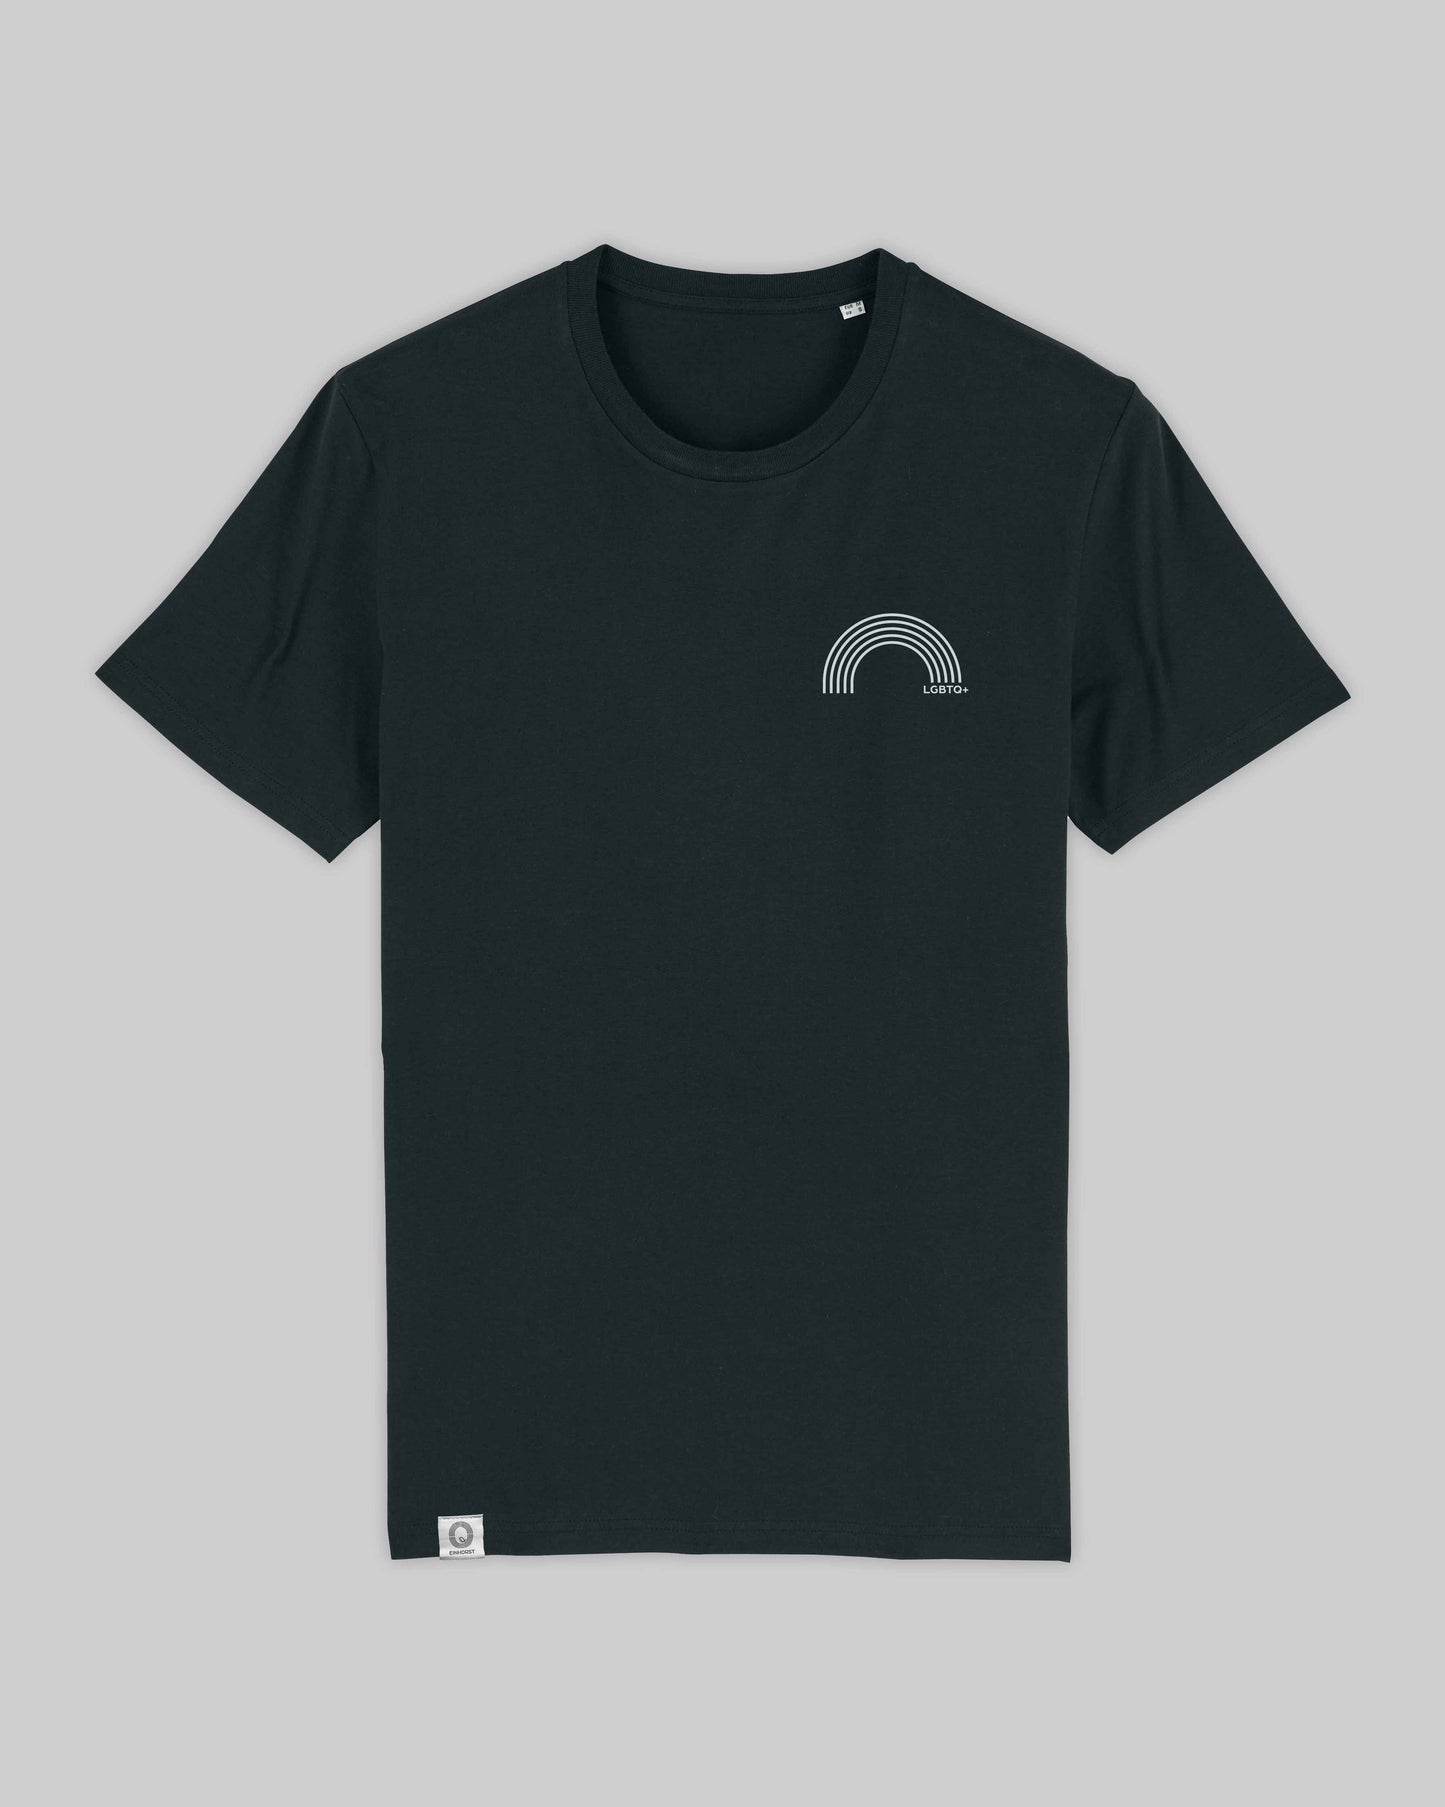 EINHORST® unisex Organic Shirt in Schwarz mit dem Motiv "lgbtq+ Regenbogen" in der Kombination weißer Regenbogen mit weißer Schrift, Bild von Shirt von vorne